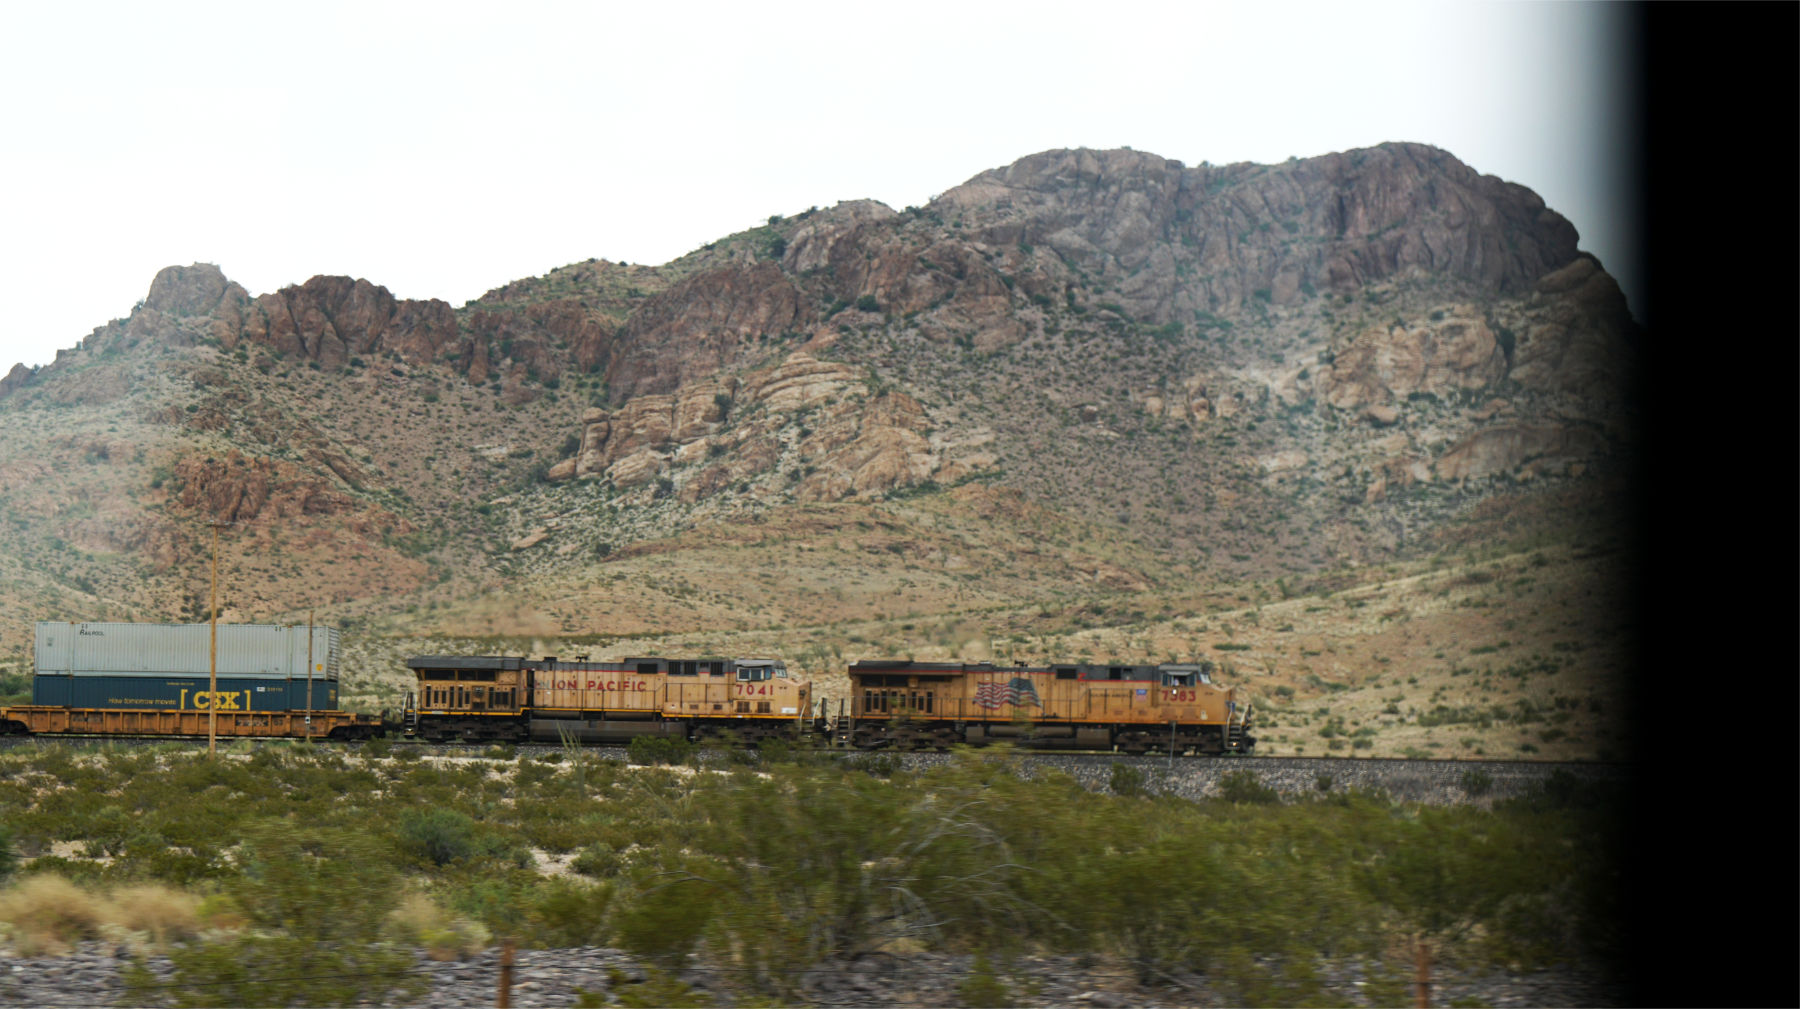 desert train